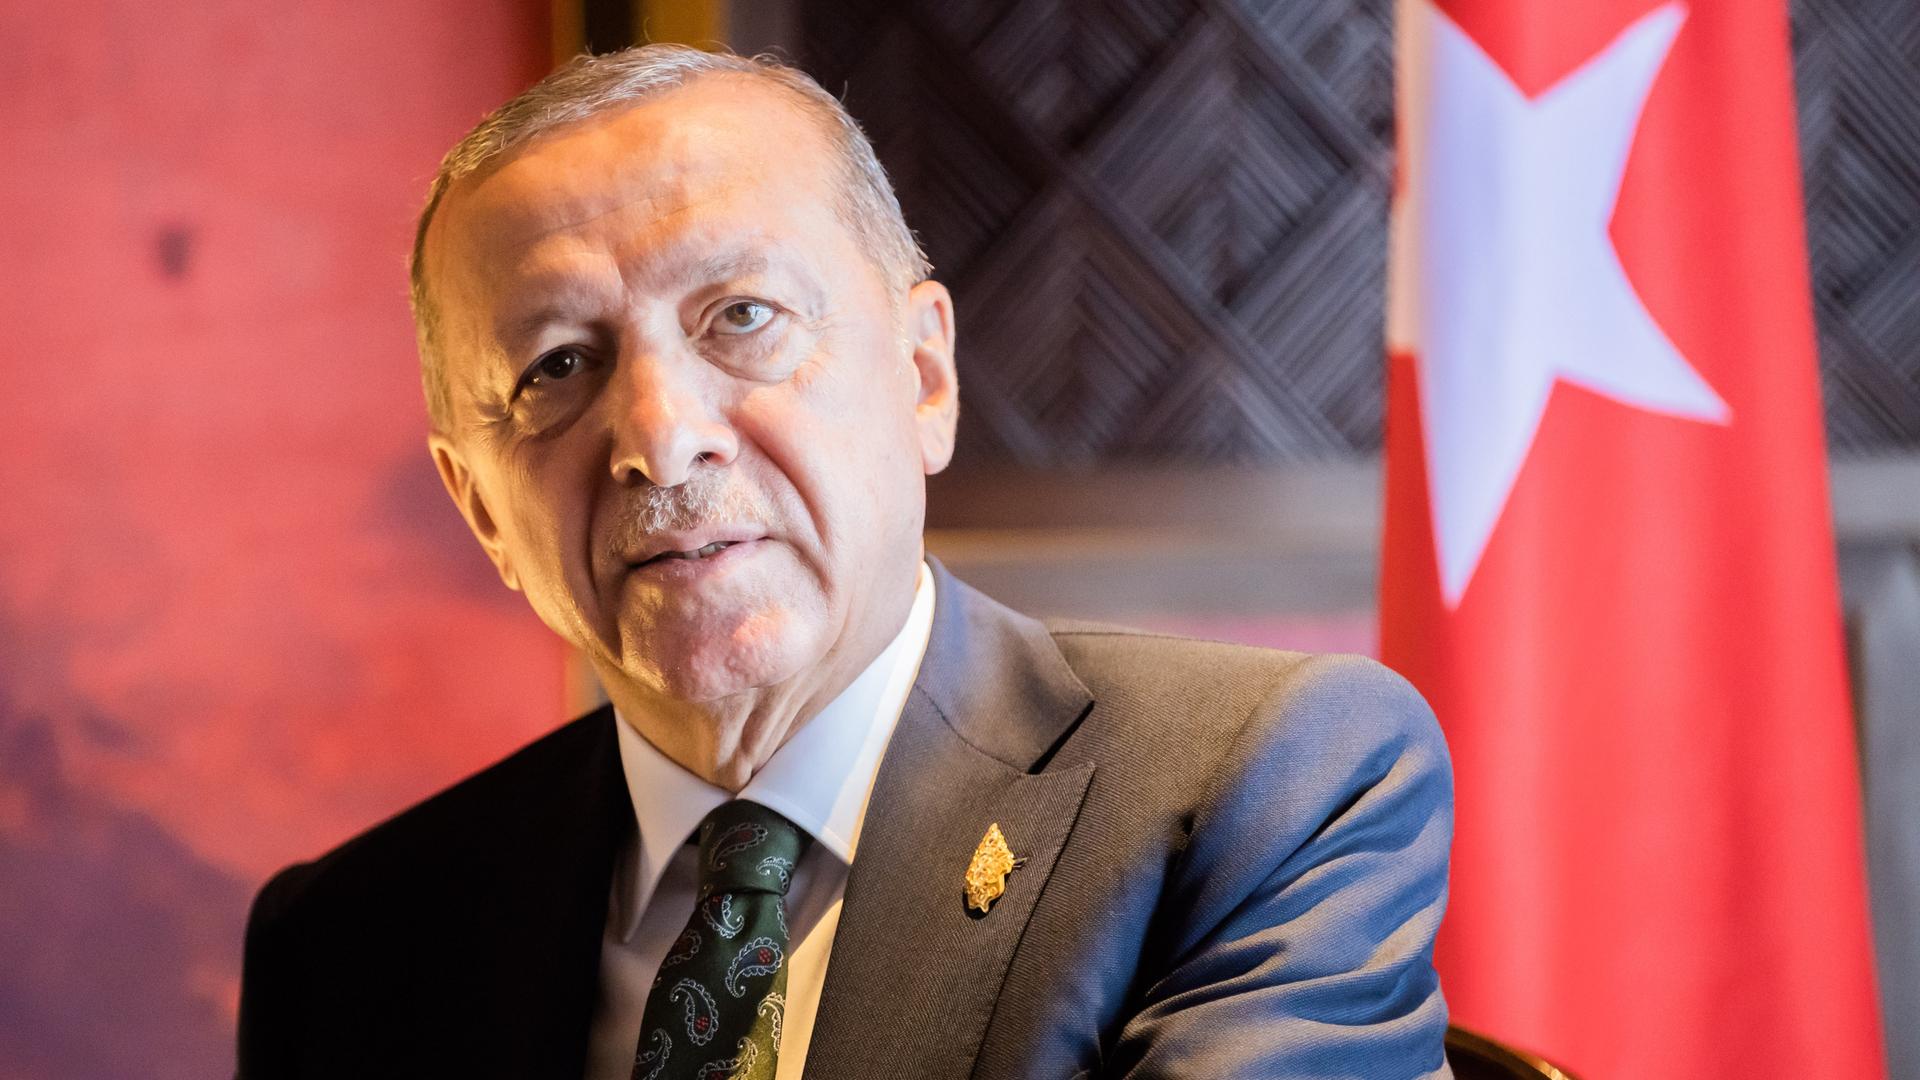 Recep Tayyip Erdogan vor der türkischen Staatsflagge